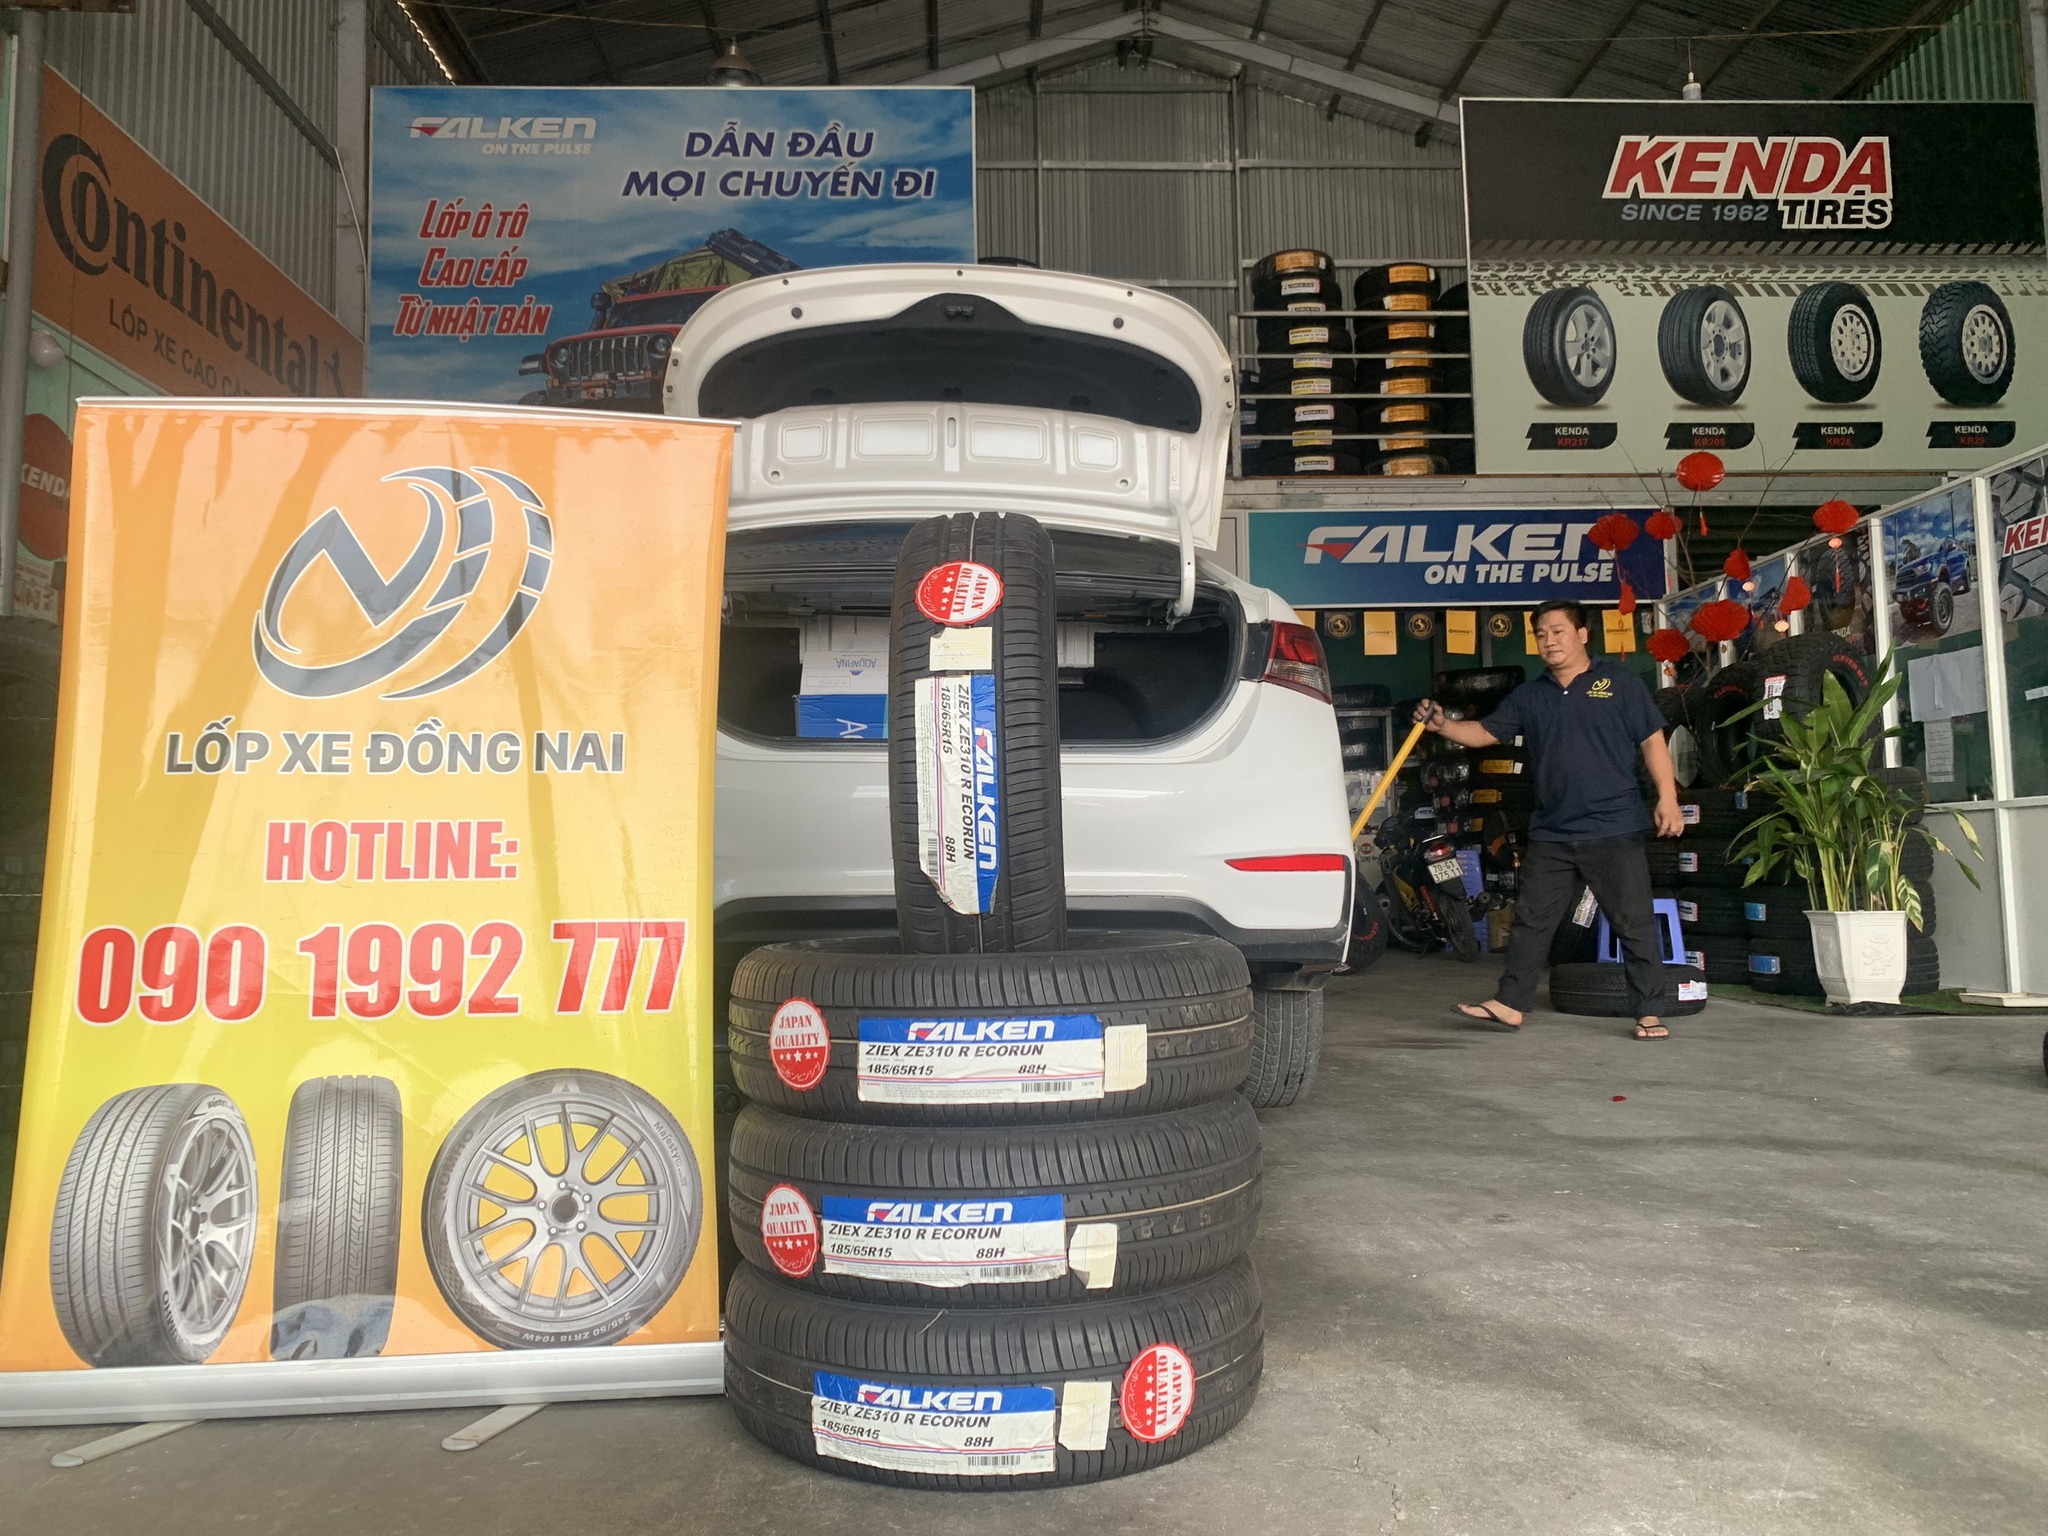 TƯ VẤN : Thay lốp xe Suzuki Ertiga ở Long Thành, Đông Nai.